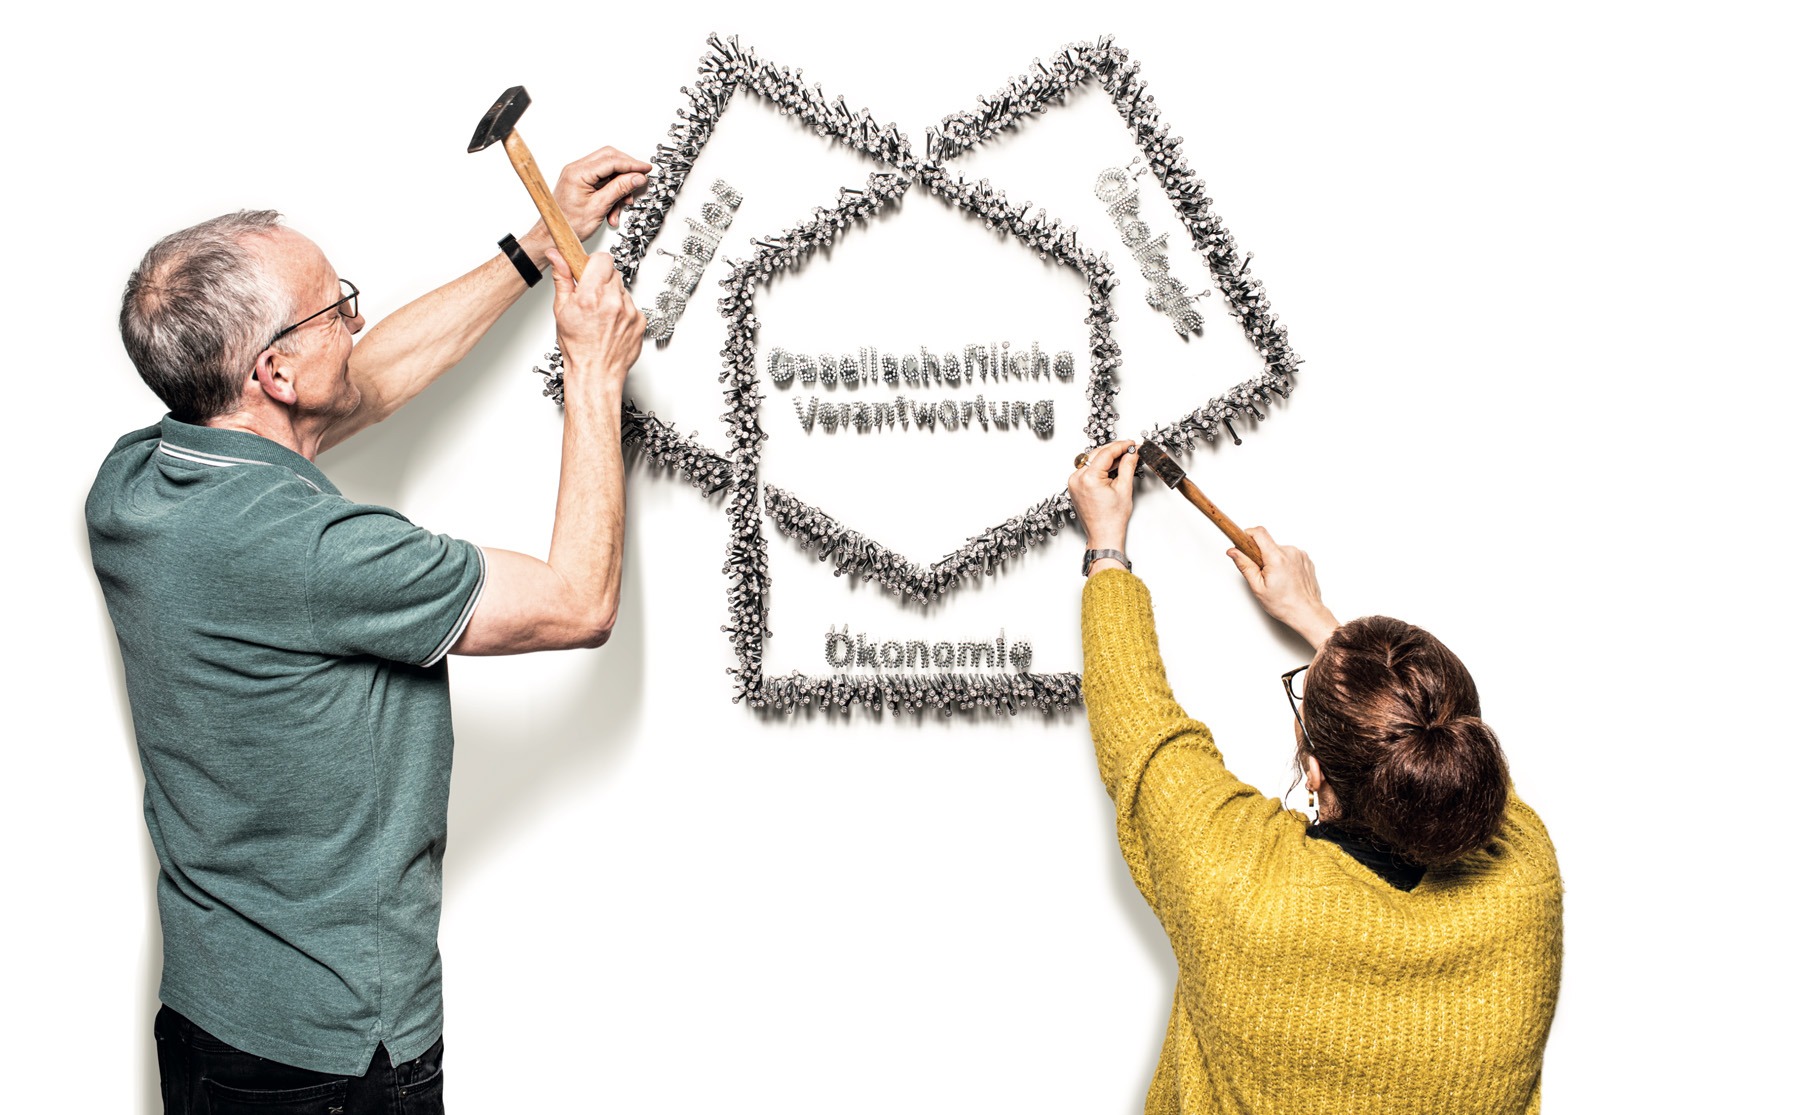 Bild von zwei Personen, die das Geschäftsmodell der GEWOBA an die Wand nageln.